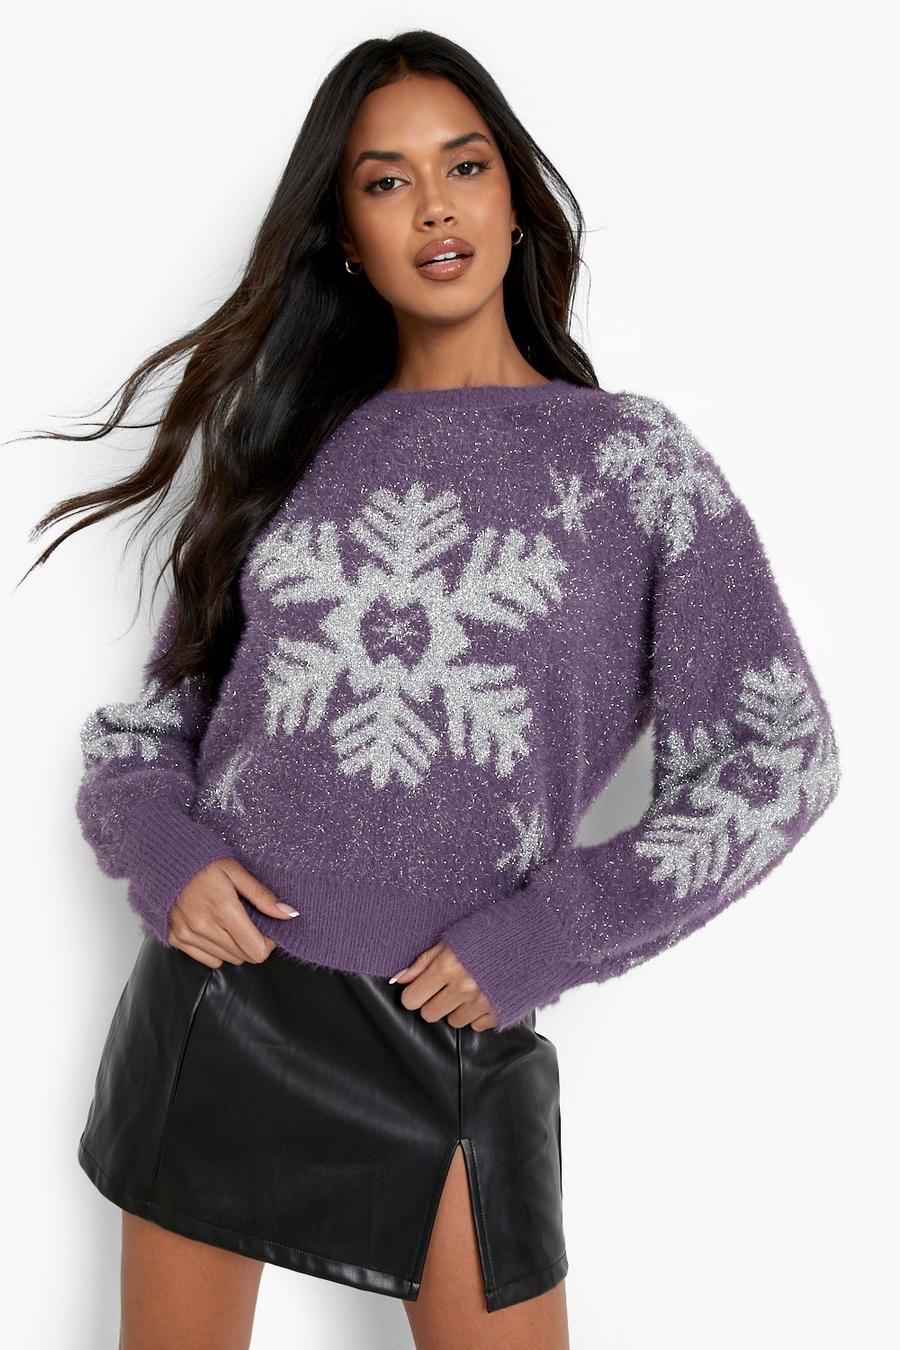 סגול purple סוודר לחג המולד עם הדפס פתיתי שלג ונצנצים